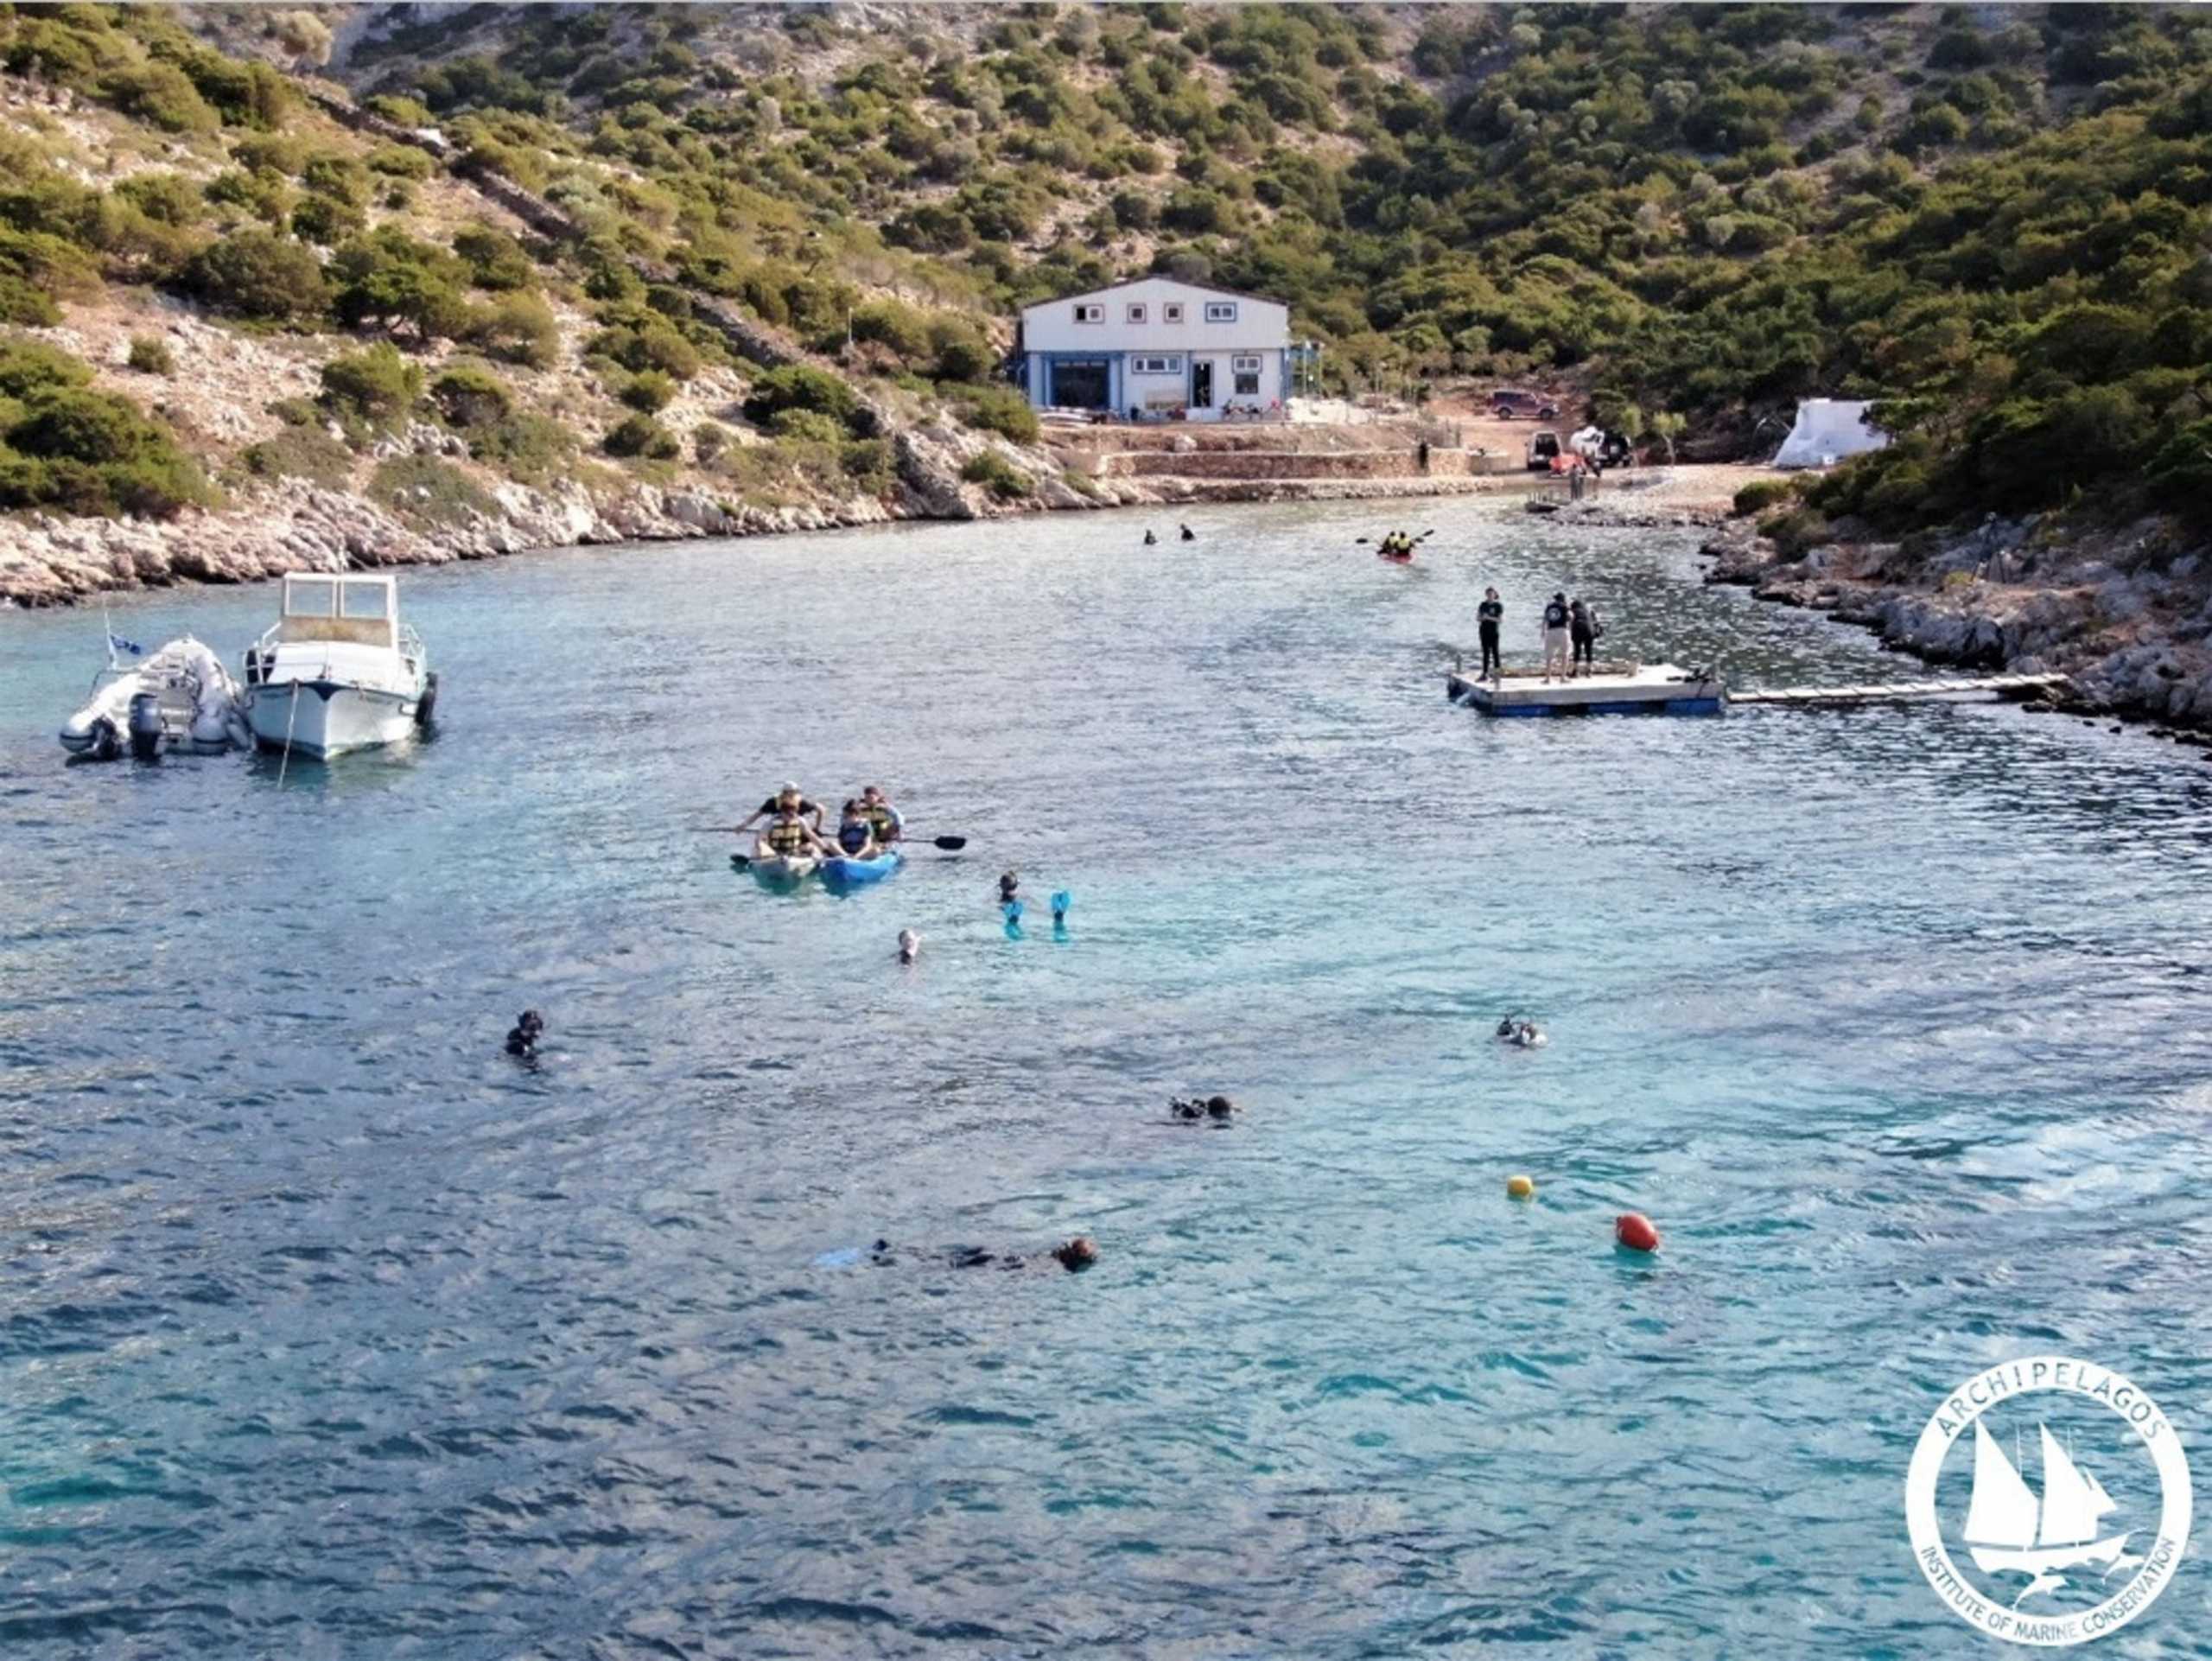 Λειψοί: Ταξίδι στην αυθεντική Ελλάδα – Αποθέωση από μεγάλο ταξιδιωτικό blog ενόψει καλοκαιριού